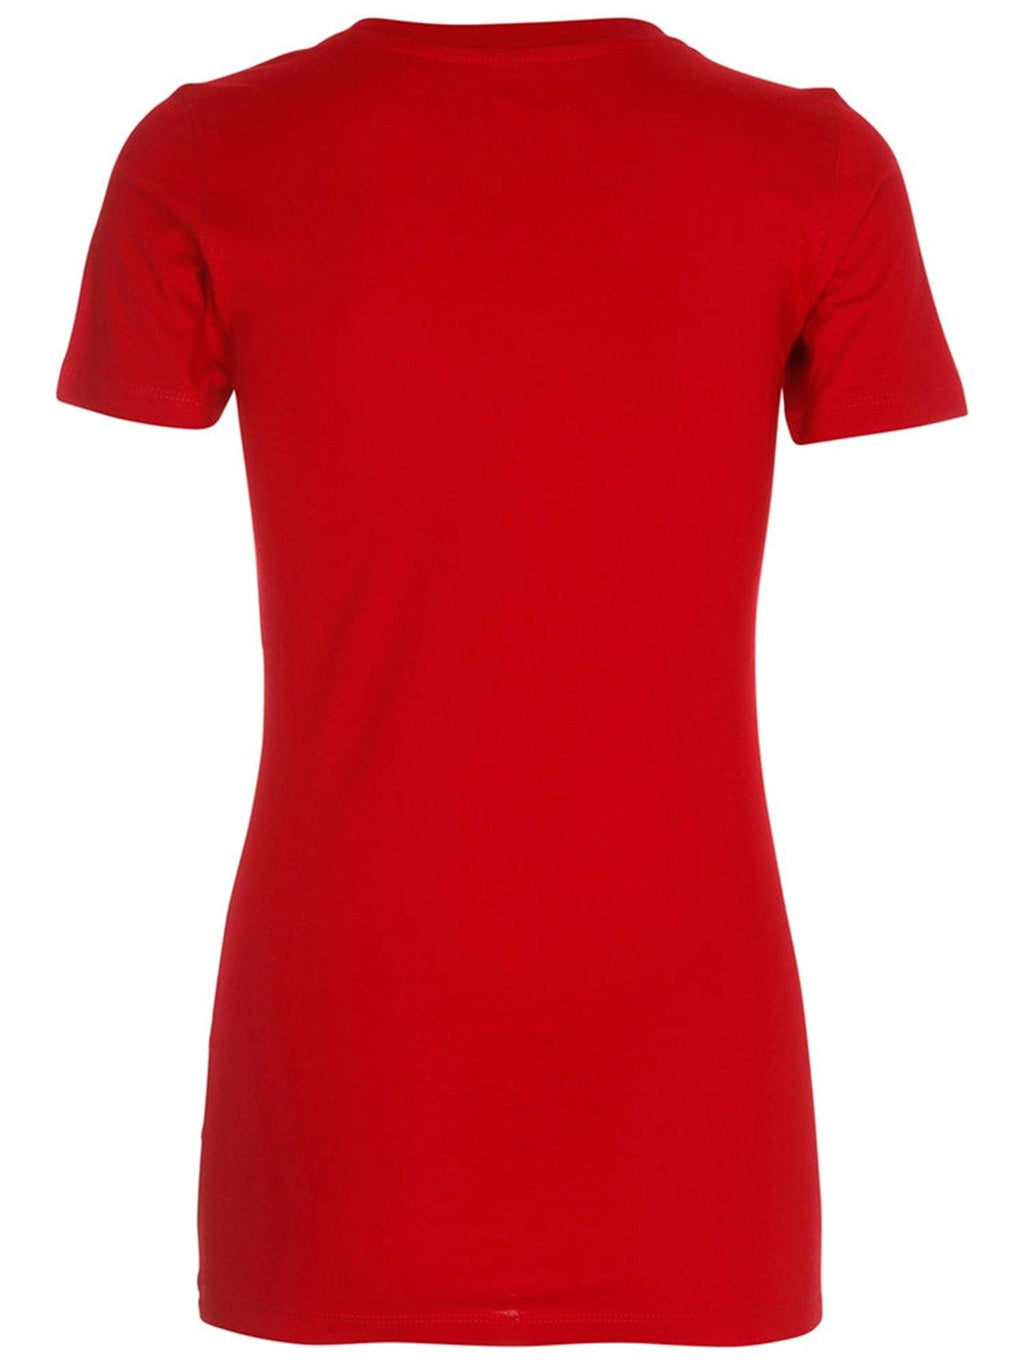 T-shirt ajusté - Rouge